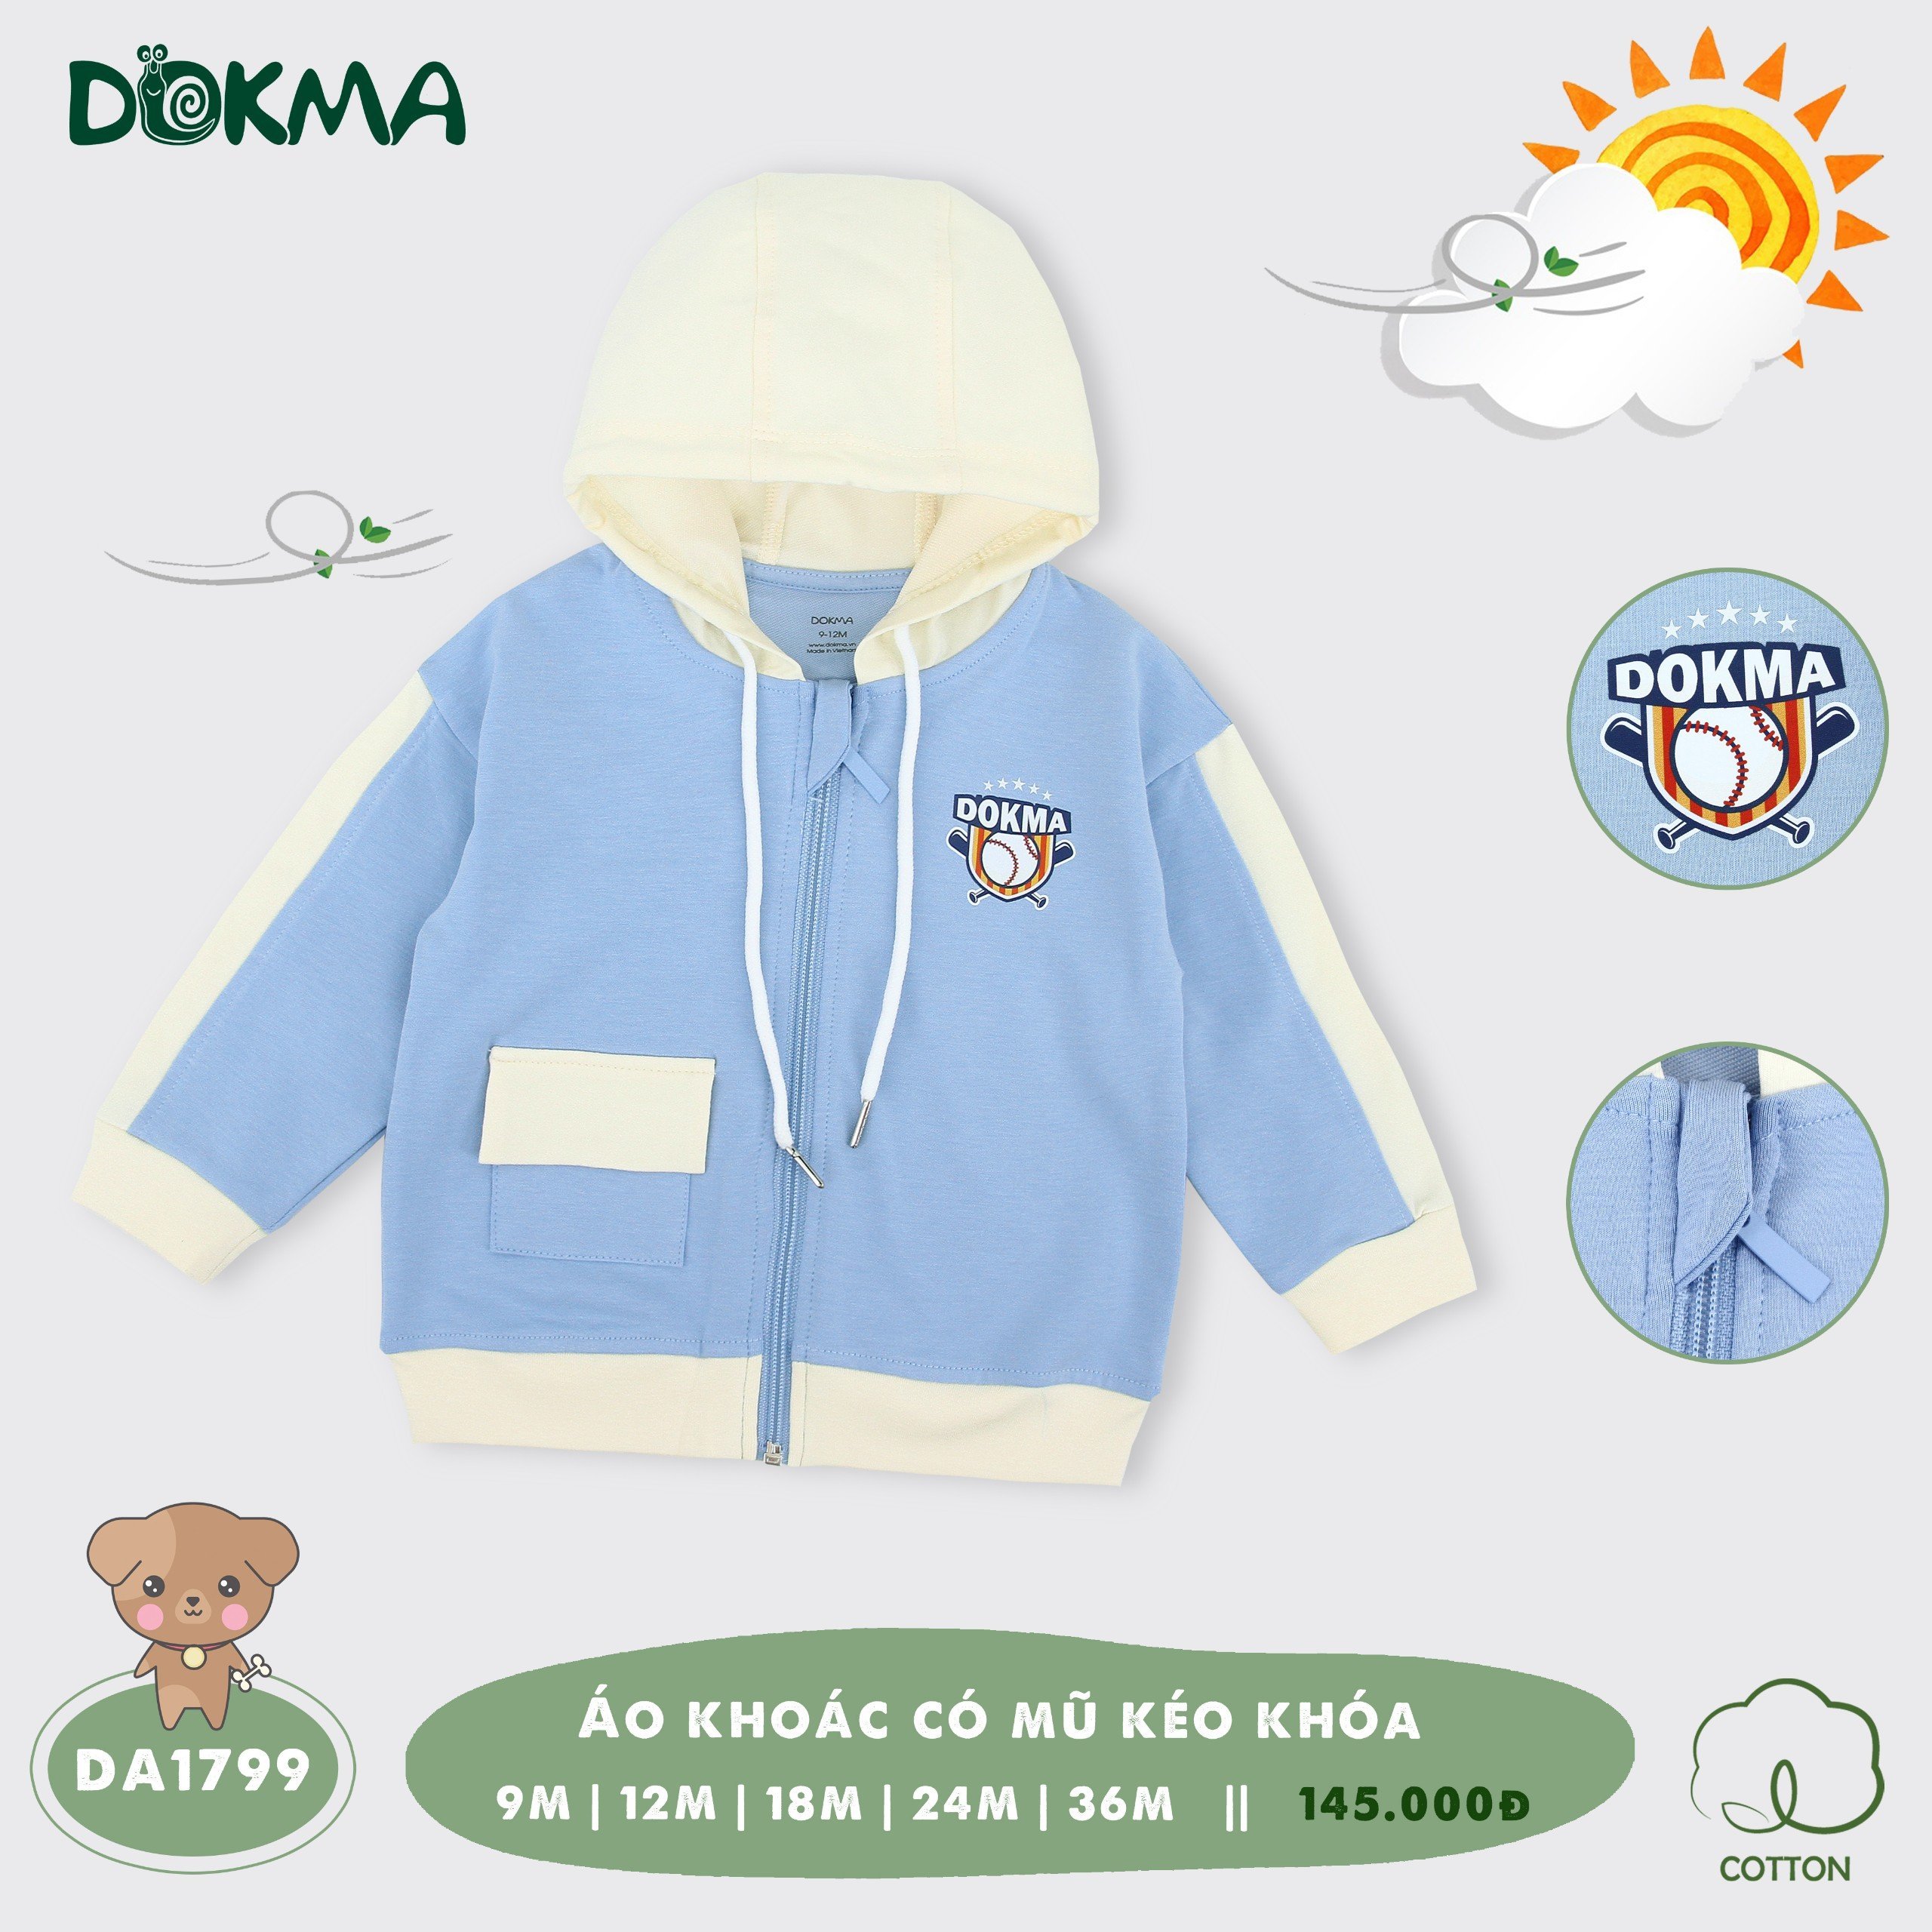 Áo khoác Cotton Da Cá chống nắng cho bé Dokma DA1799 phù hợp cho bé từ 6